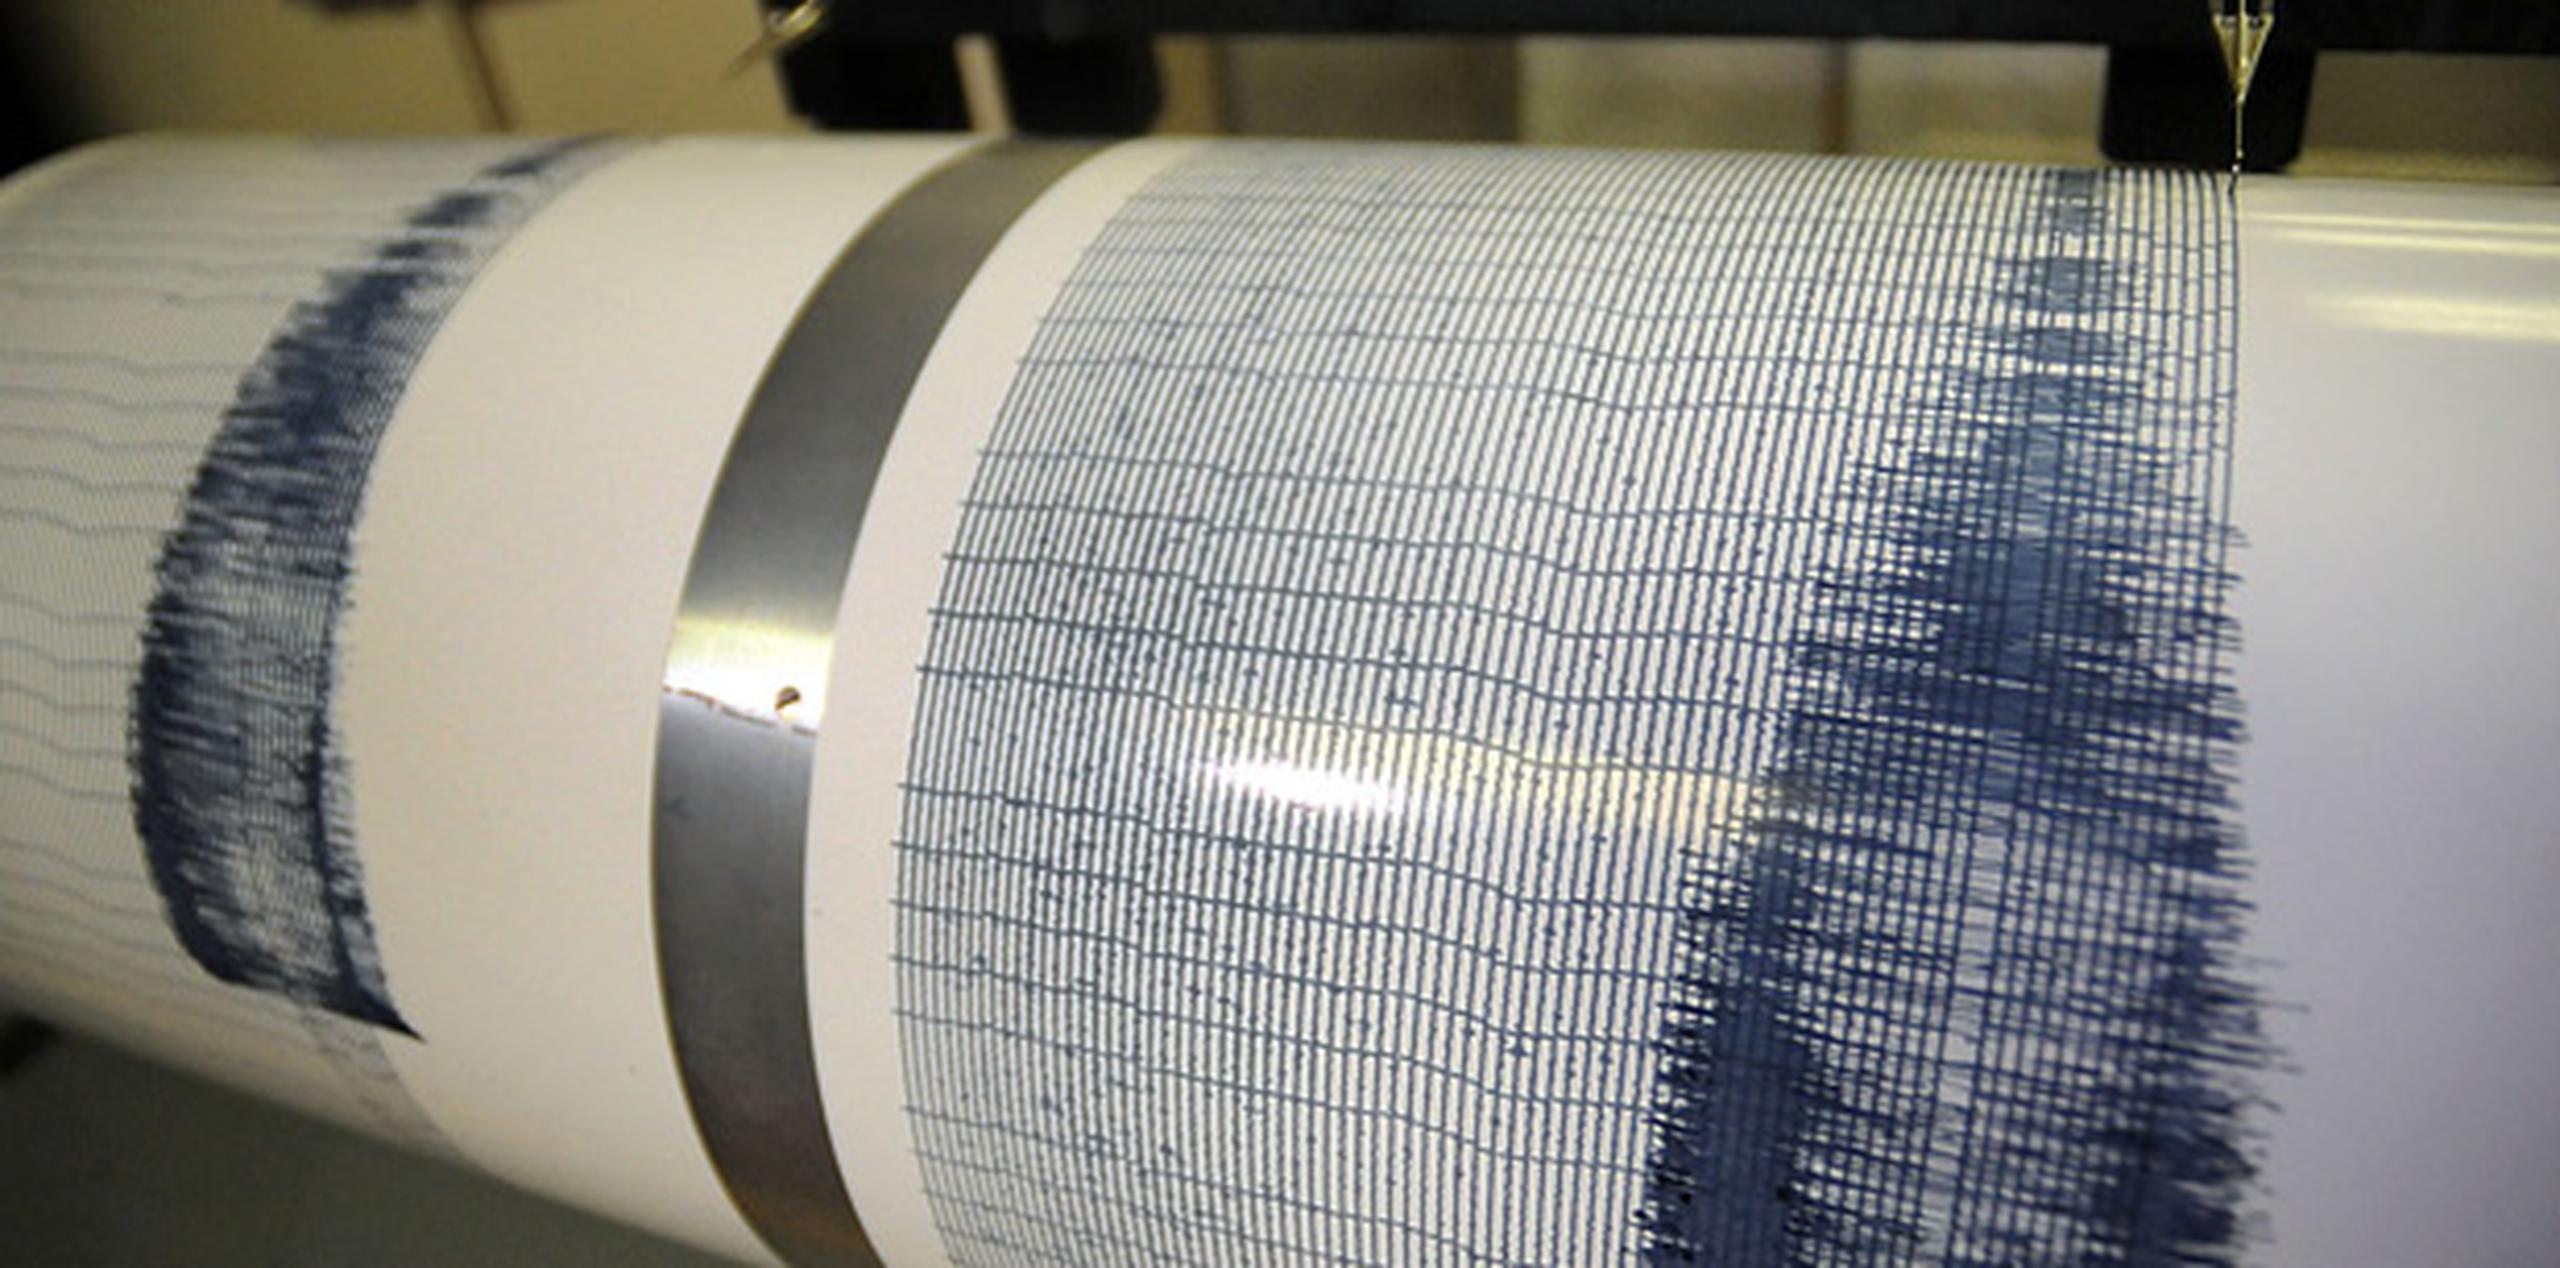 El sismo ocurrió a unas 250 millas al noroeste del epicentro de un terremoto de magnitud 6.0 que causó grandes daños en Napa y sus alrededores el 24 de agosto.